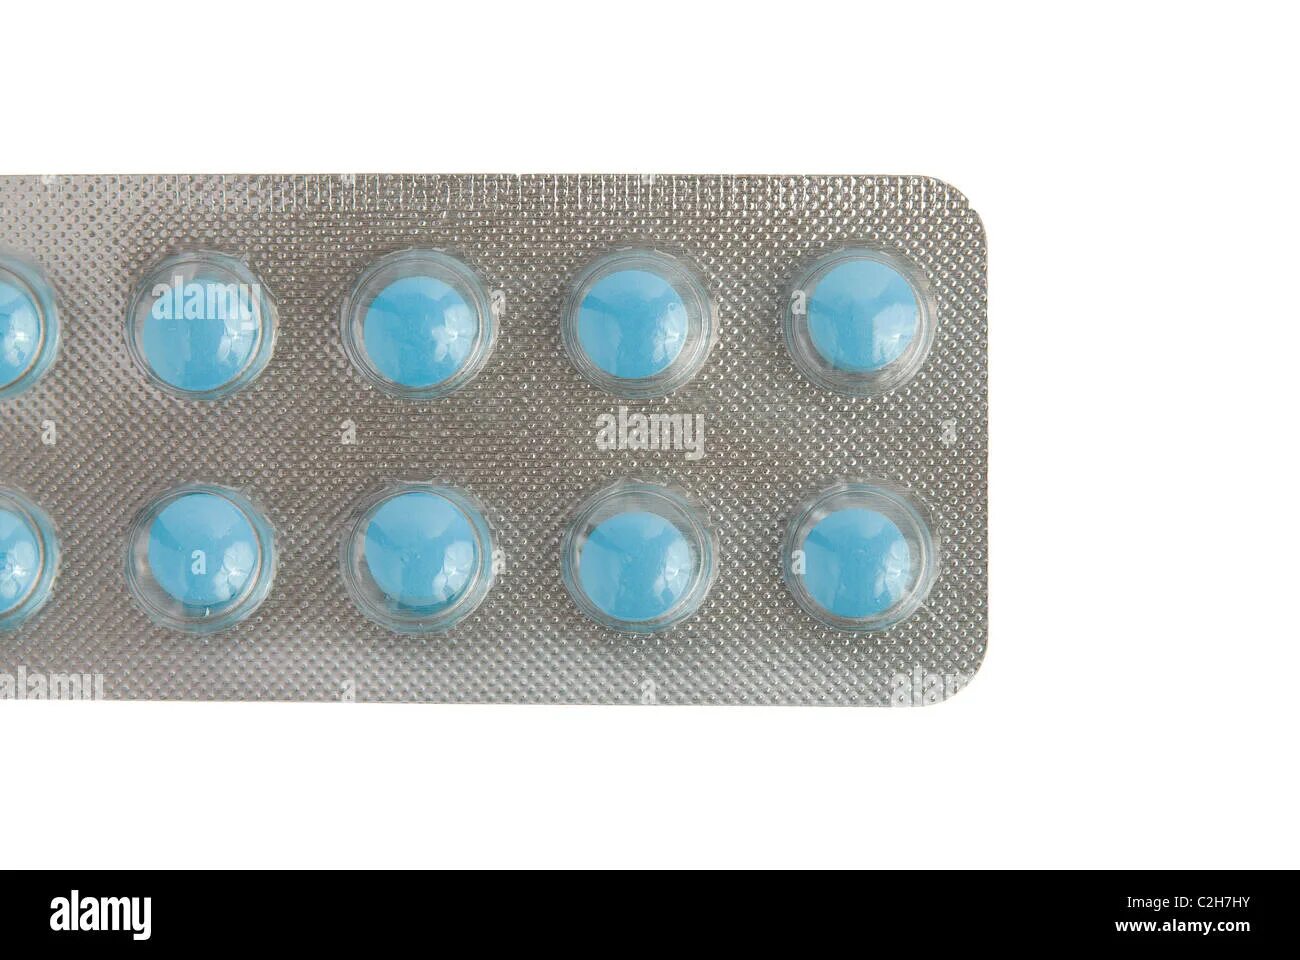 Синие таблетки обезболивающие. Голубые таблетки. Синие круглые таблетки для потенции. Таблетки голубого цвета. Маленькие синие таблетки для потенции.